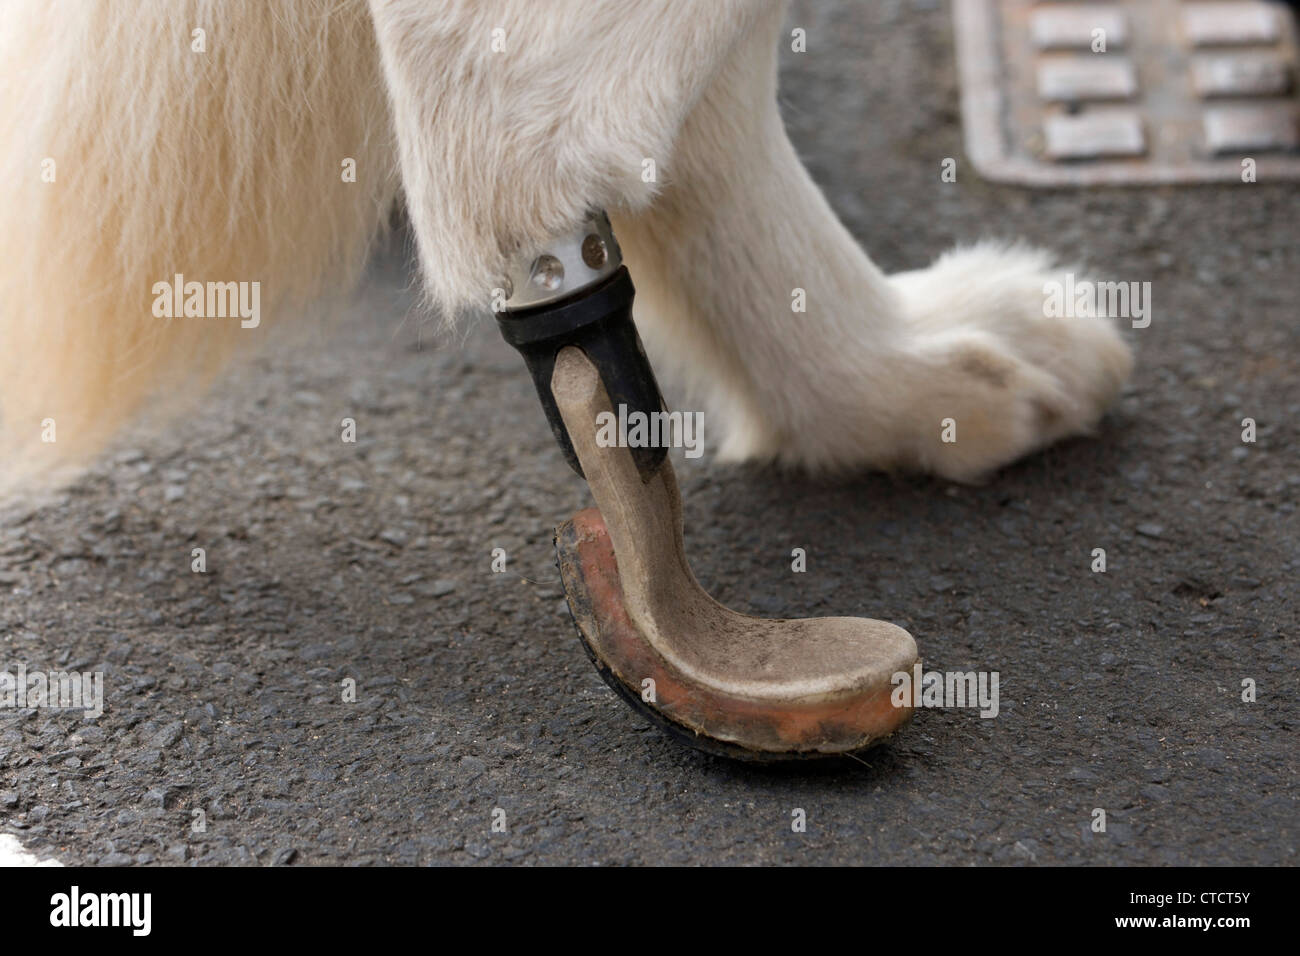 Mitzi perro milagro (4) con una prótesis paw. Un caballo pisó ella y veterinarios injertada sobre un nuevo paw, salvándole la vida. Foto de stock